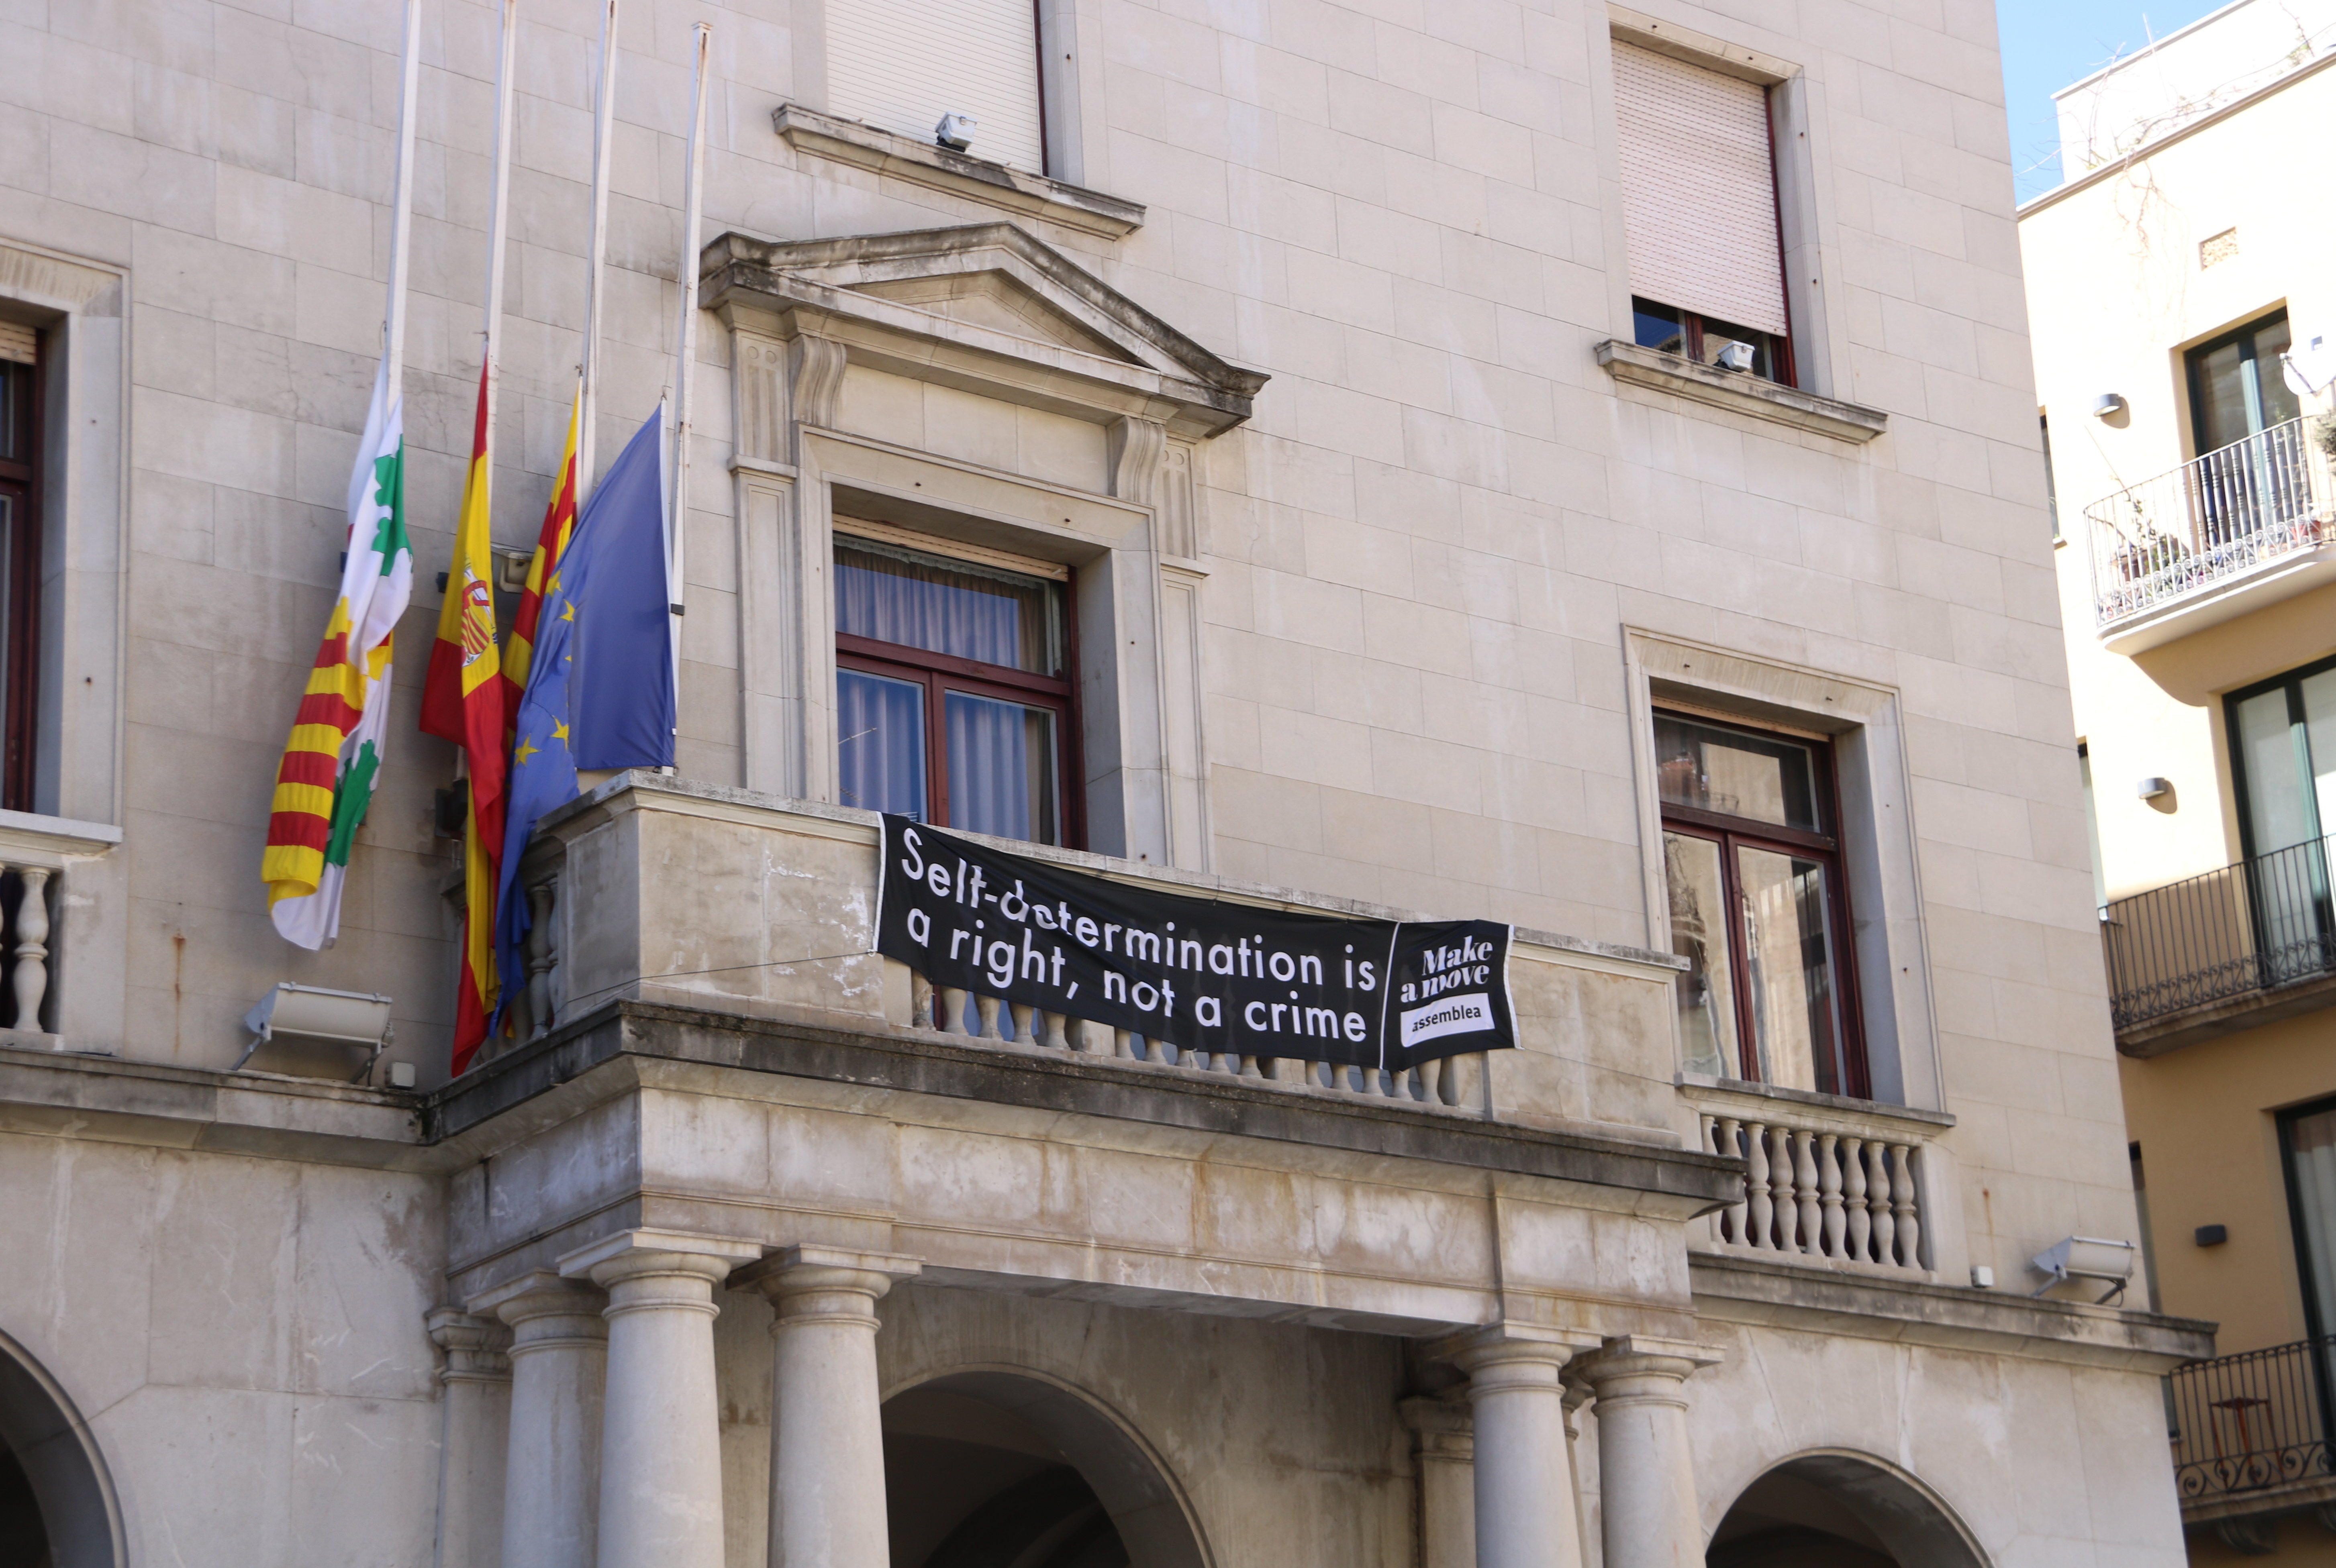 Figueres descuelga la pancarta del ayuntamiento y la pondrá en el edificio privado colindante